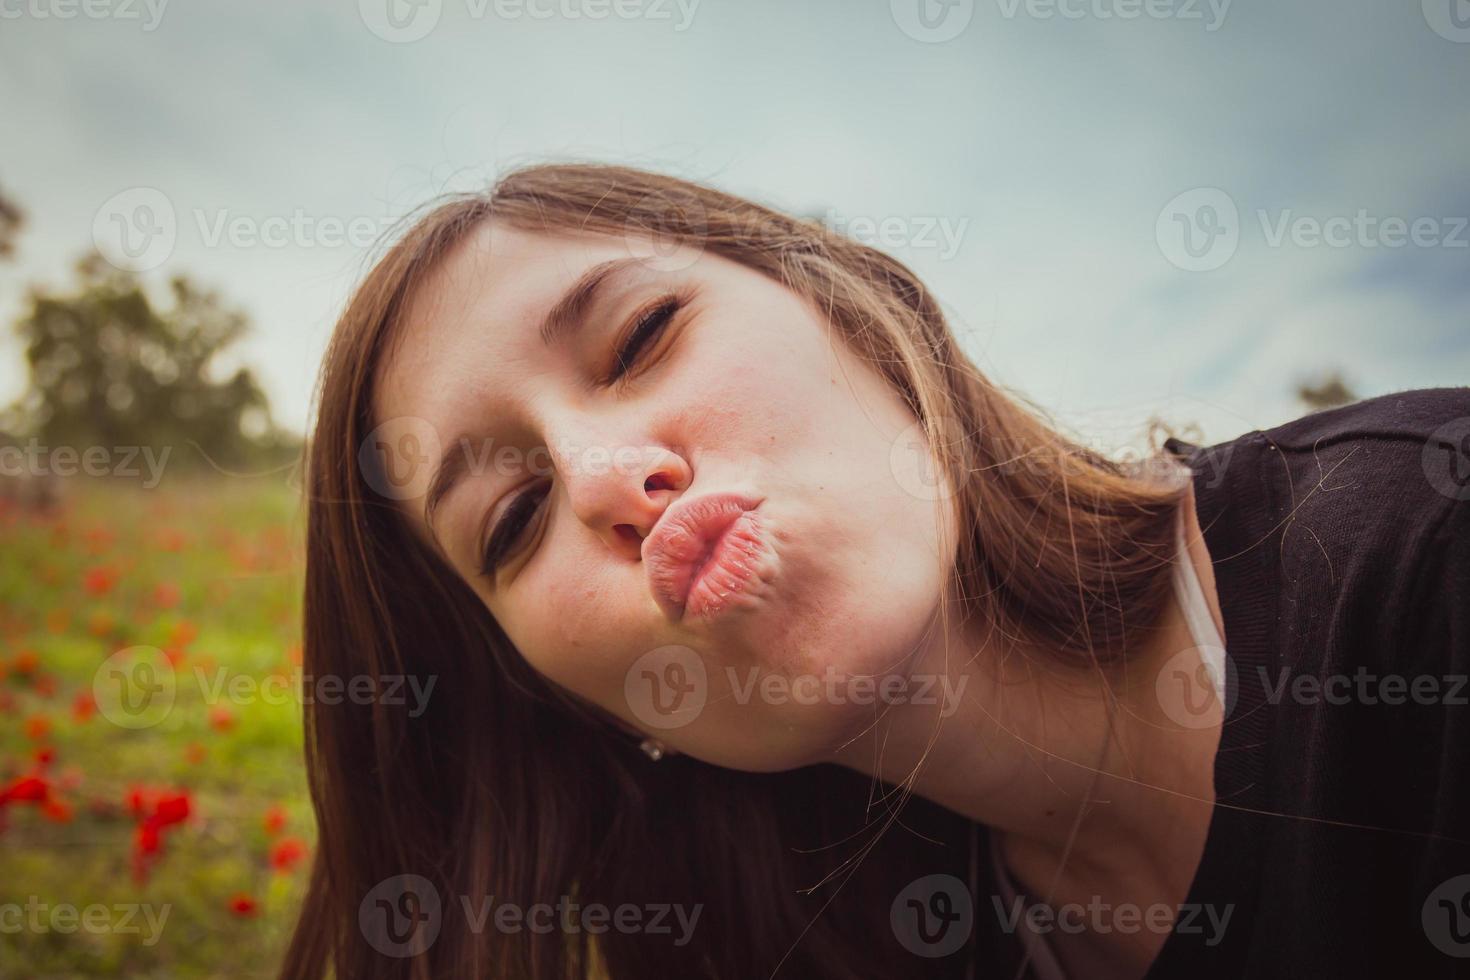 jonge vrouw die duckface-kus maakt terwijl ze een selfie-foto maakt met haar smartphone of camera op het gebied van rode klaprozen foto